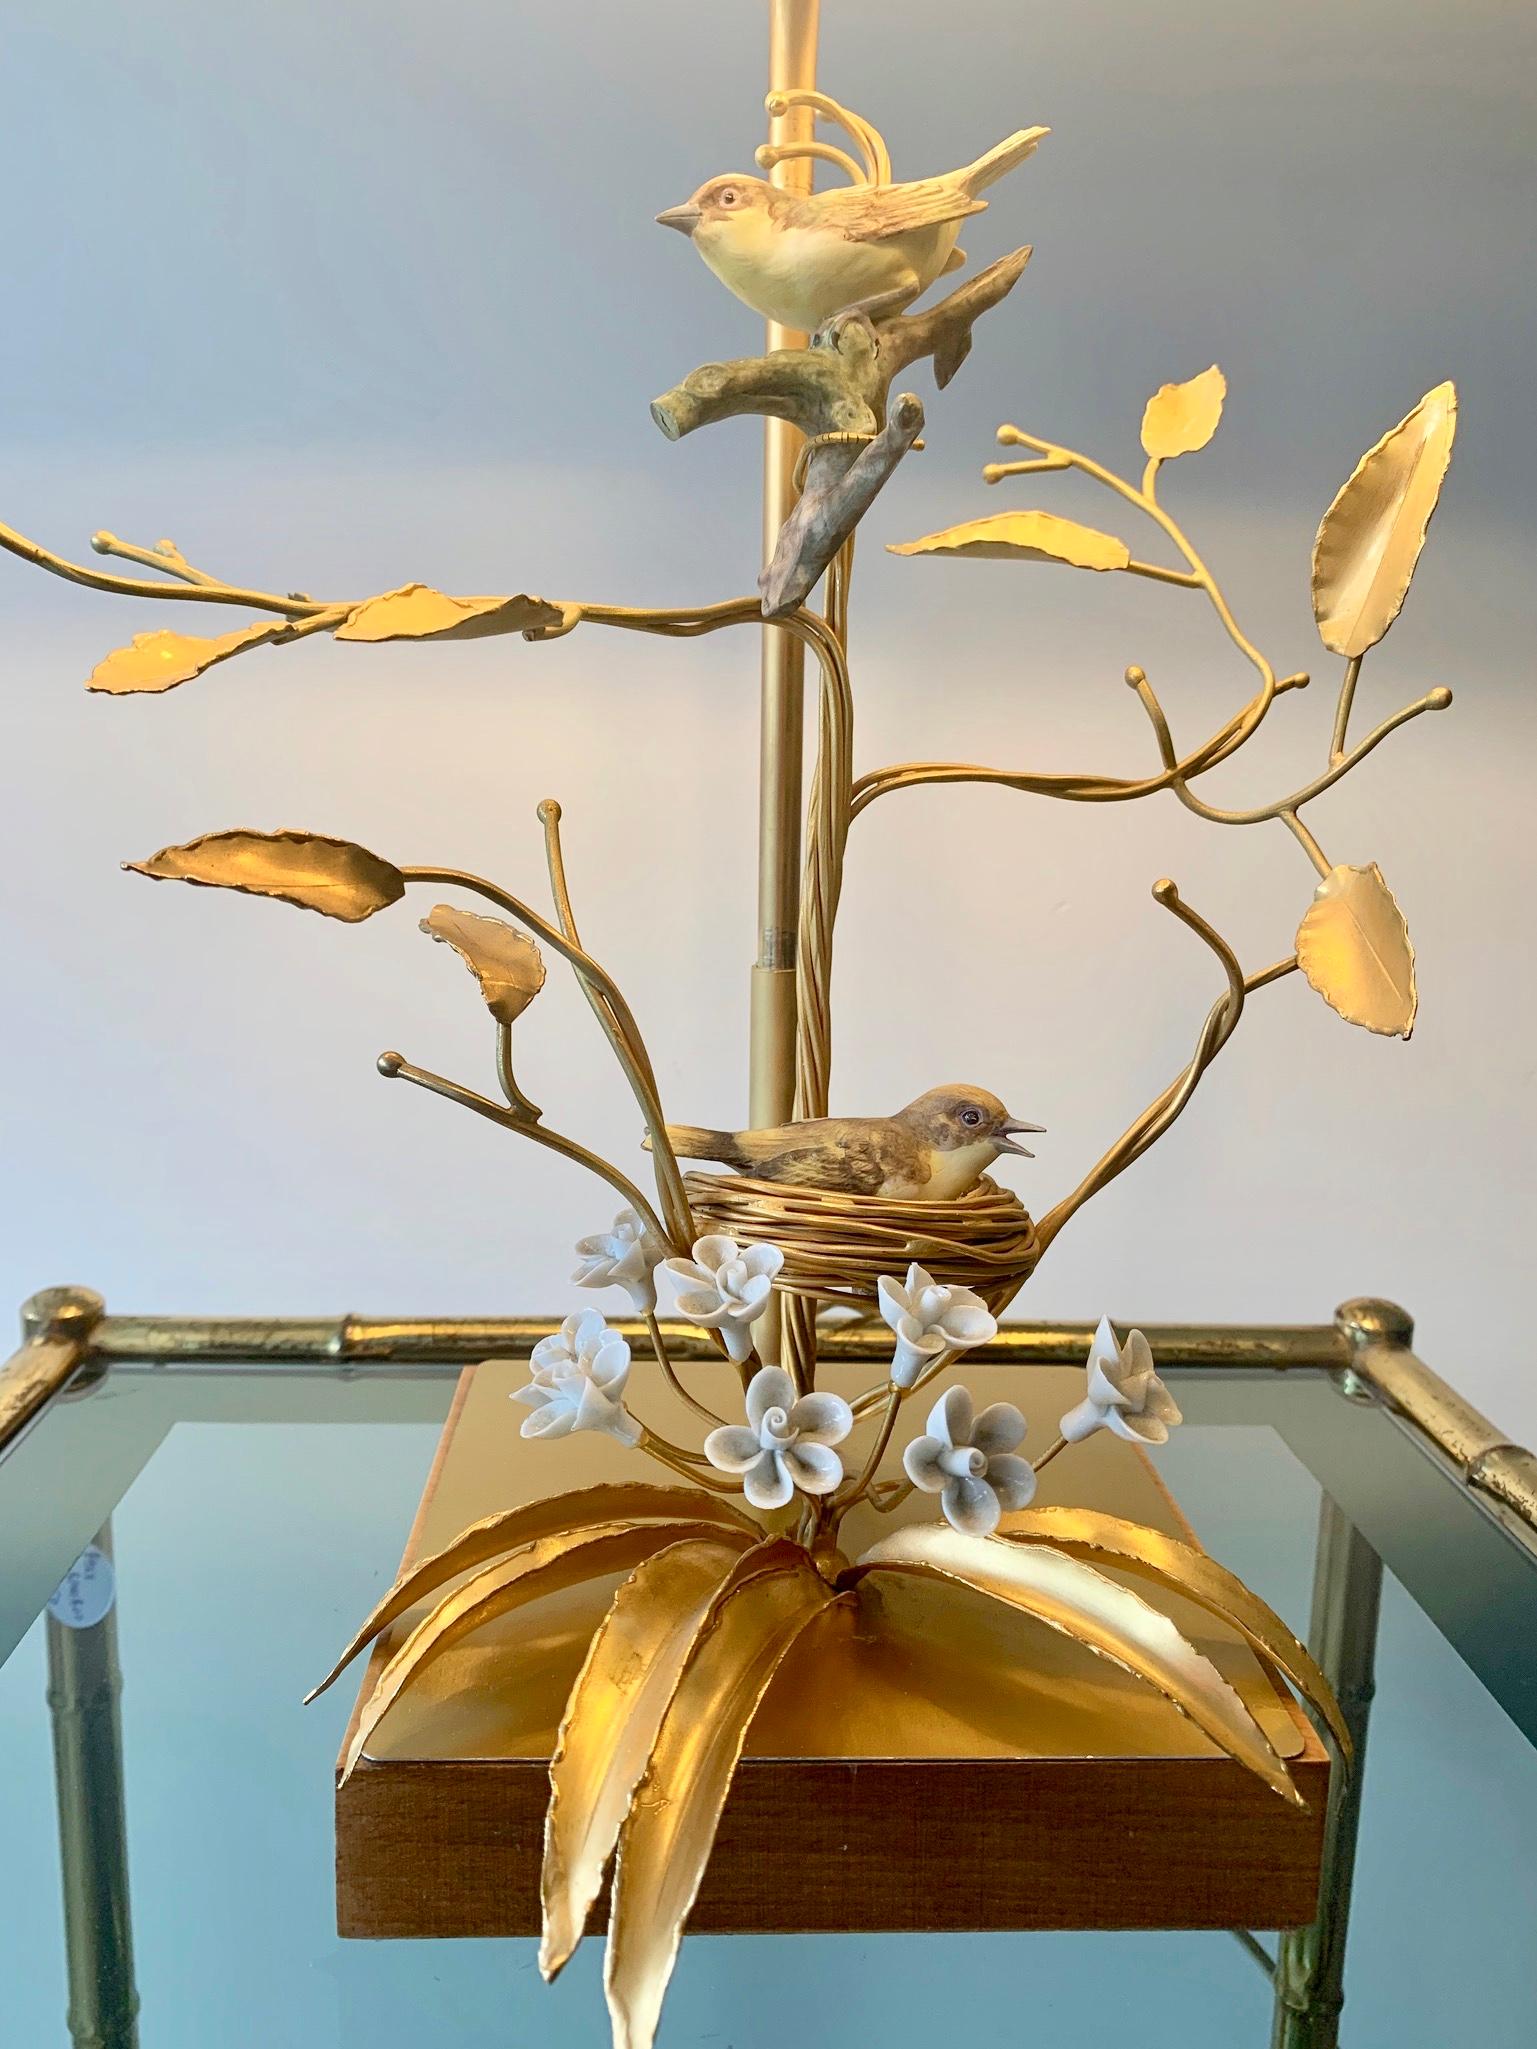 Superbe lampe de table de style Holywood Regency. Base en bois avec un travail complexe de métal doré représentant des branches d'arbre tenant un nid d'oiseau. Les oiseaux et les fleurs sont en porcelaine biscuitée.
 
Le pied de la lampe est